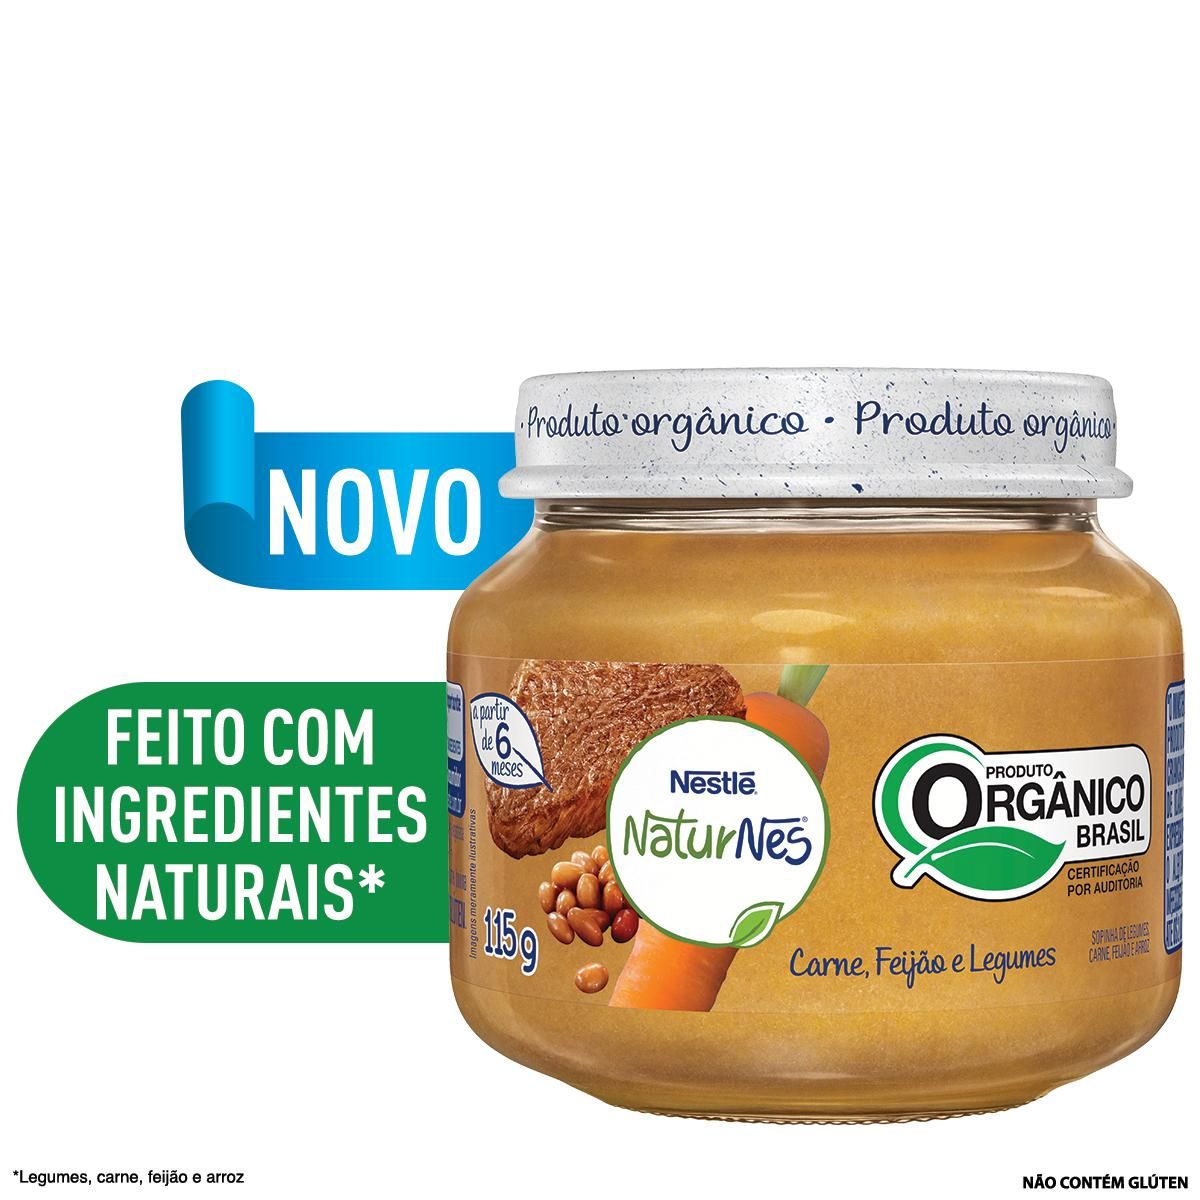 Papinha Orgânica Nestlé Naturnes Carne, Feijão e Legumes 115g image number 1